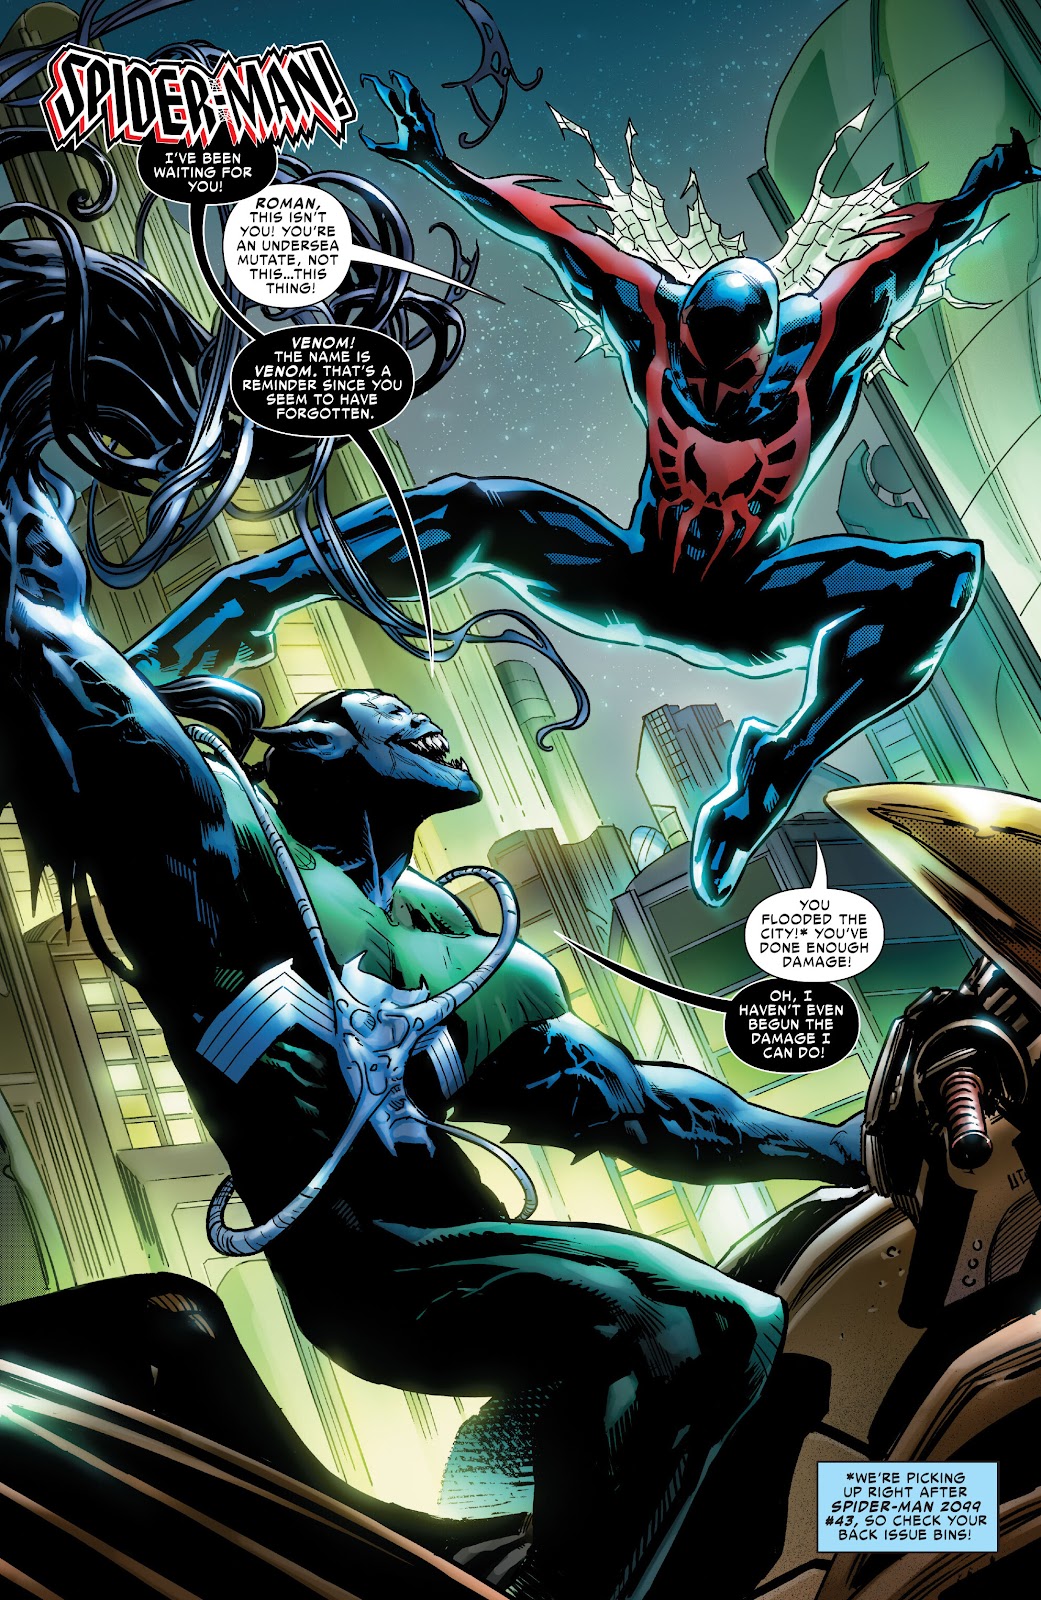 Symbiote Spider-Man 2099 issue 1 - Page 8